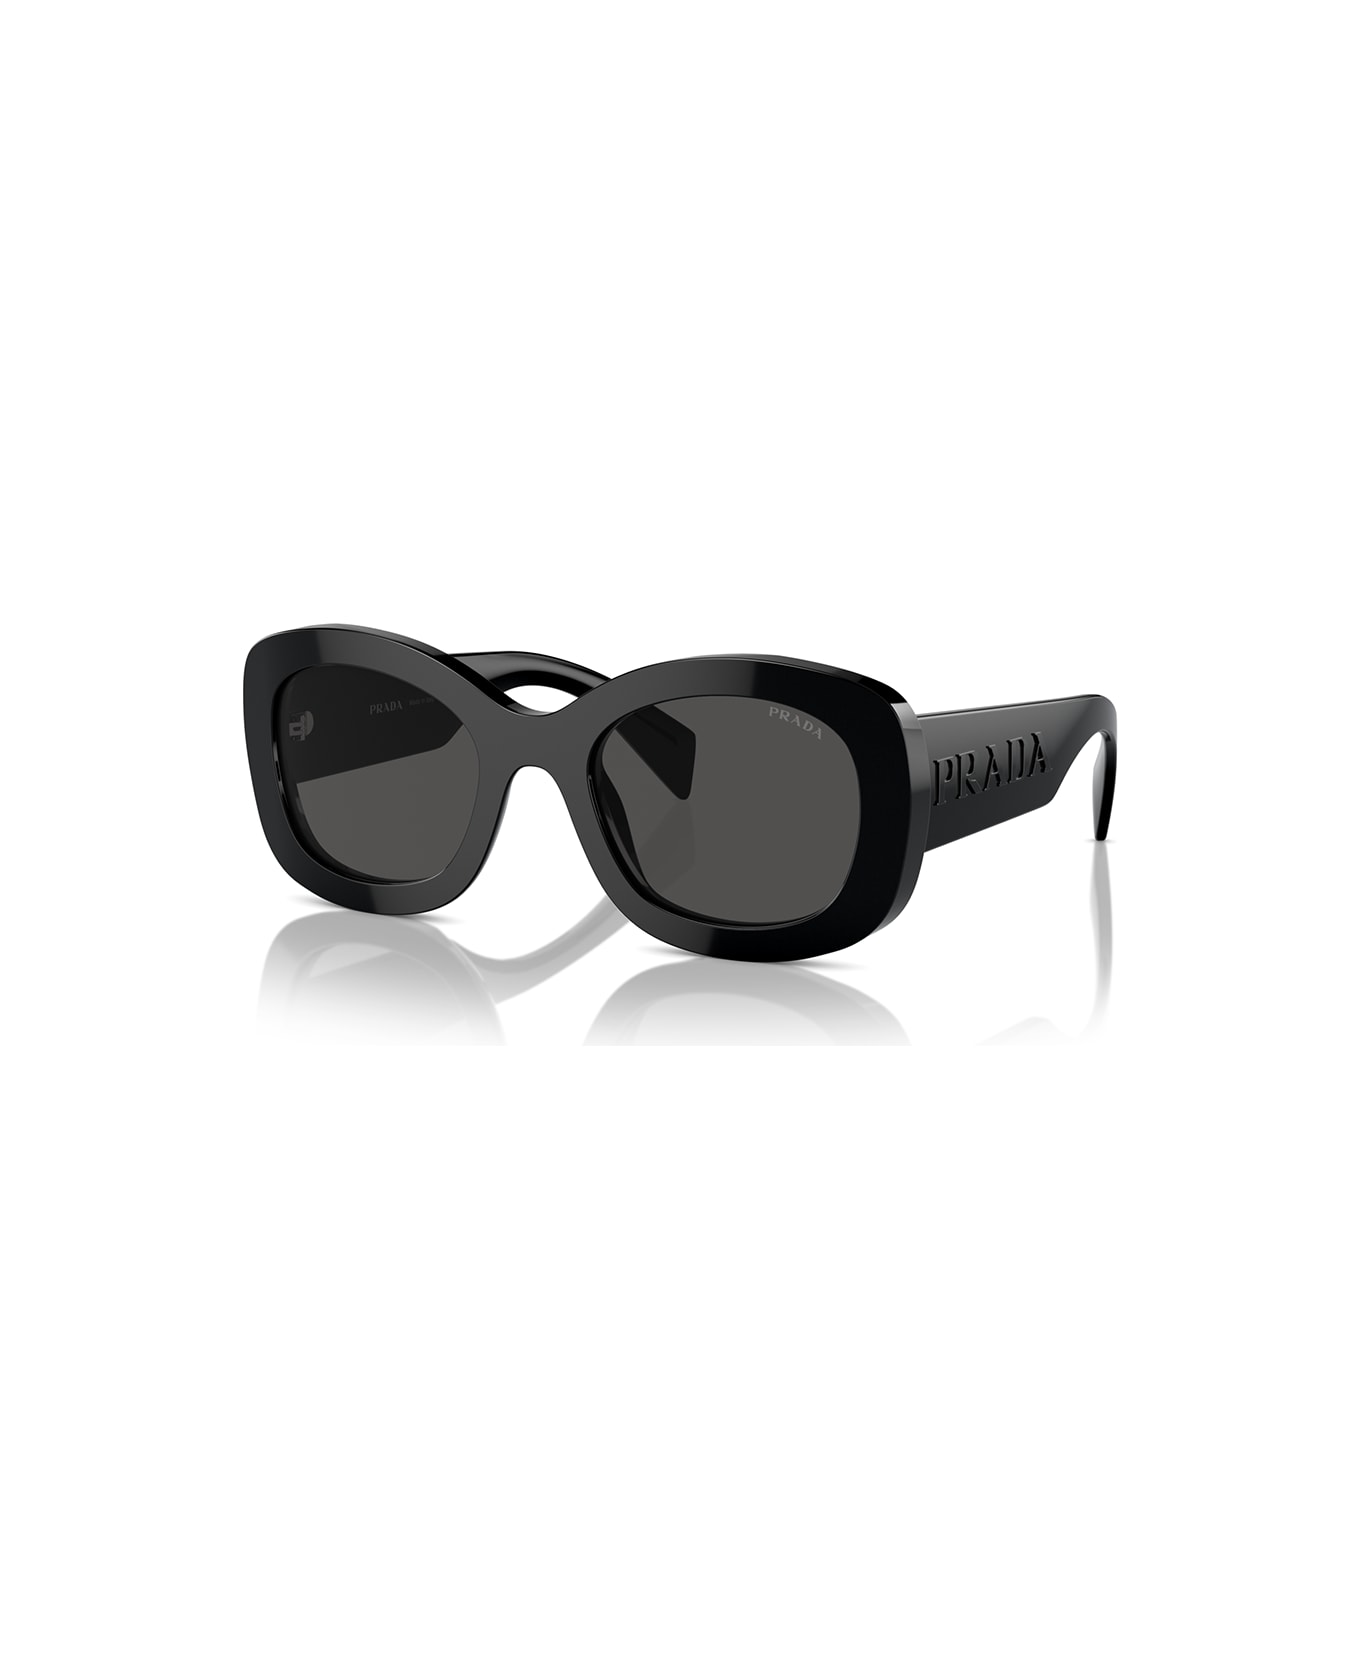 Prada Eyewear Sunglasses - Nero/Nero